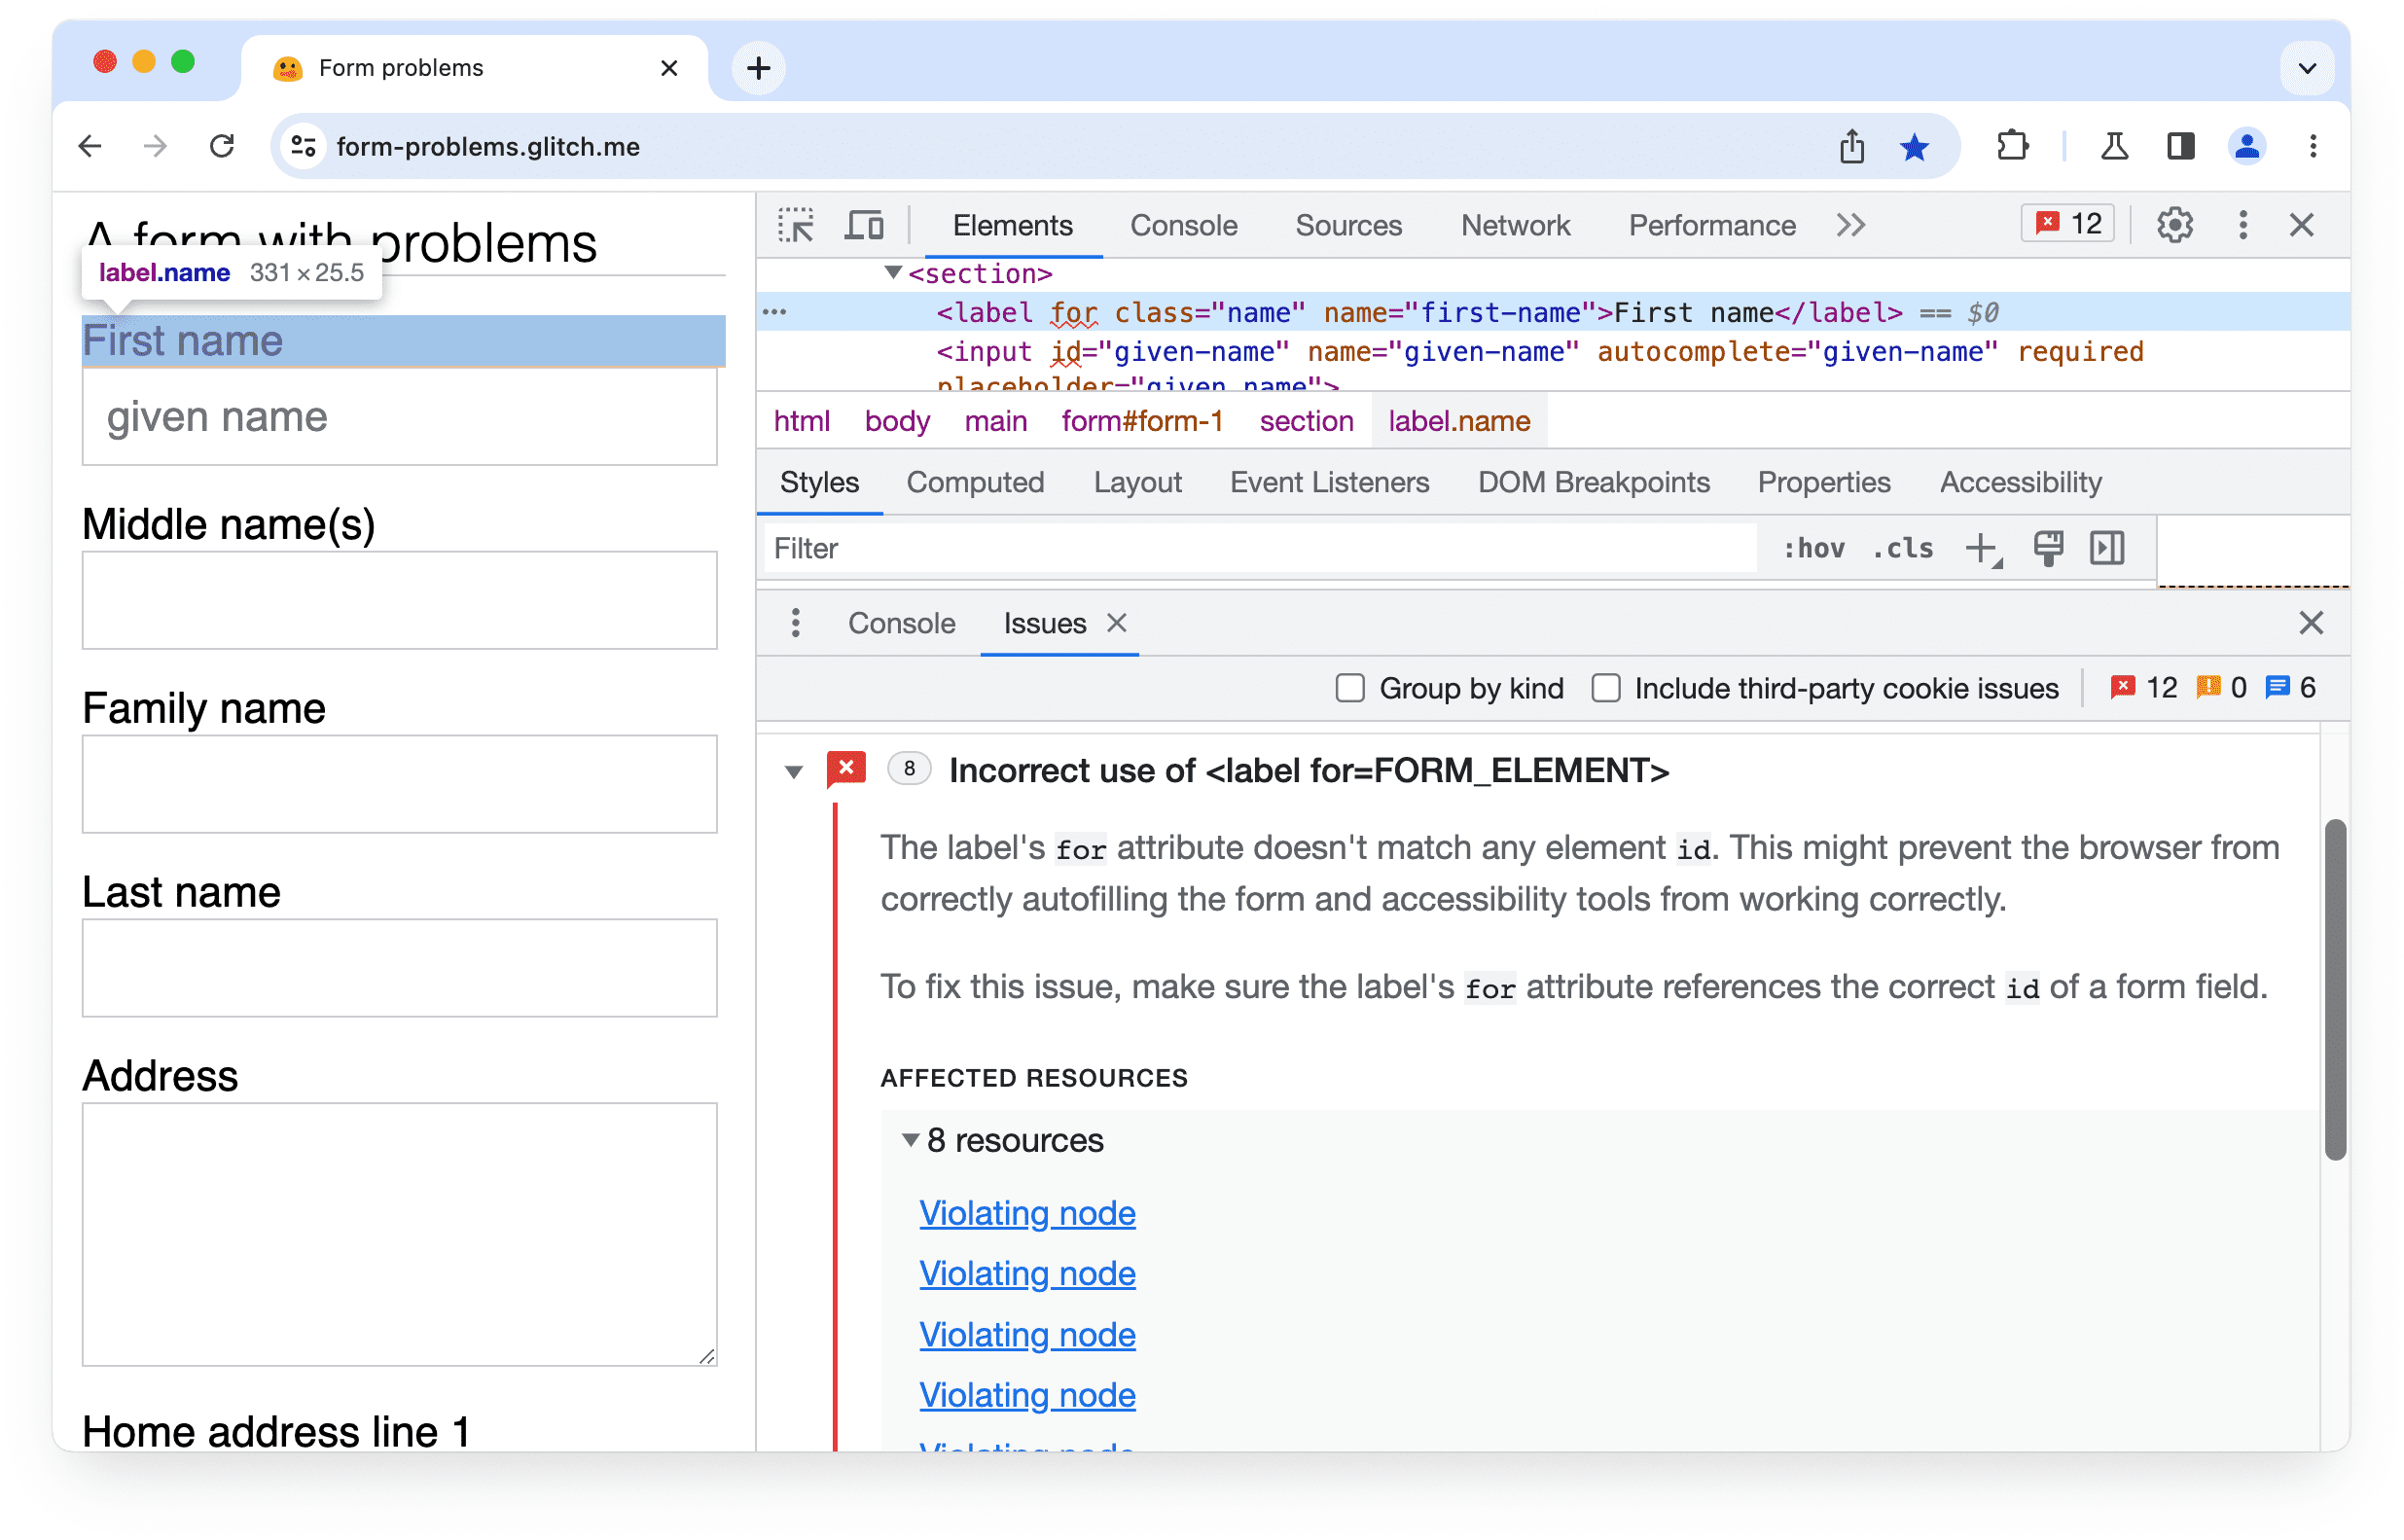 مشكلة موسّعة في
&quot;أدوات مطوري البرامج في Chrome&quot;: استخدام غير صحيح للتصنيف للسمة